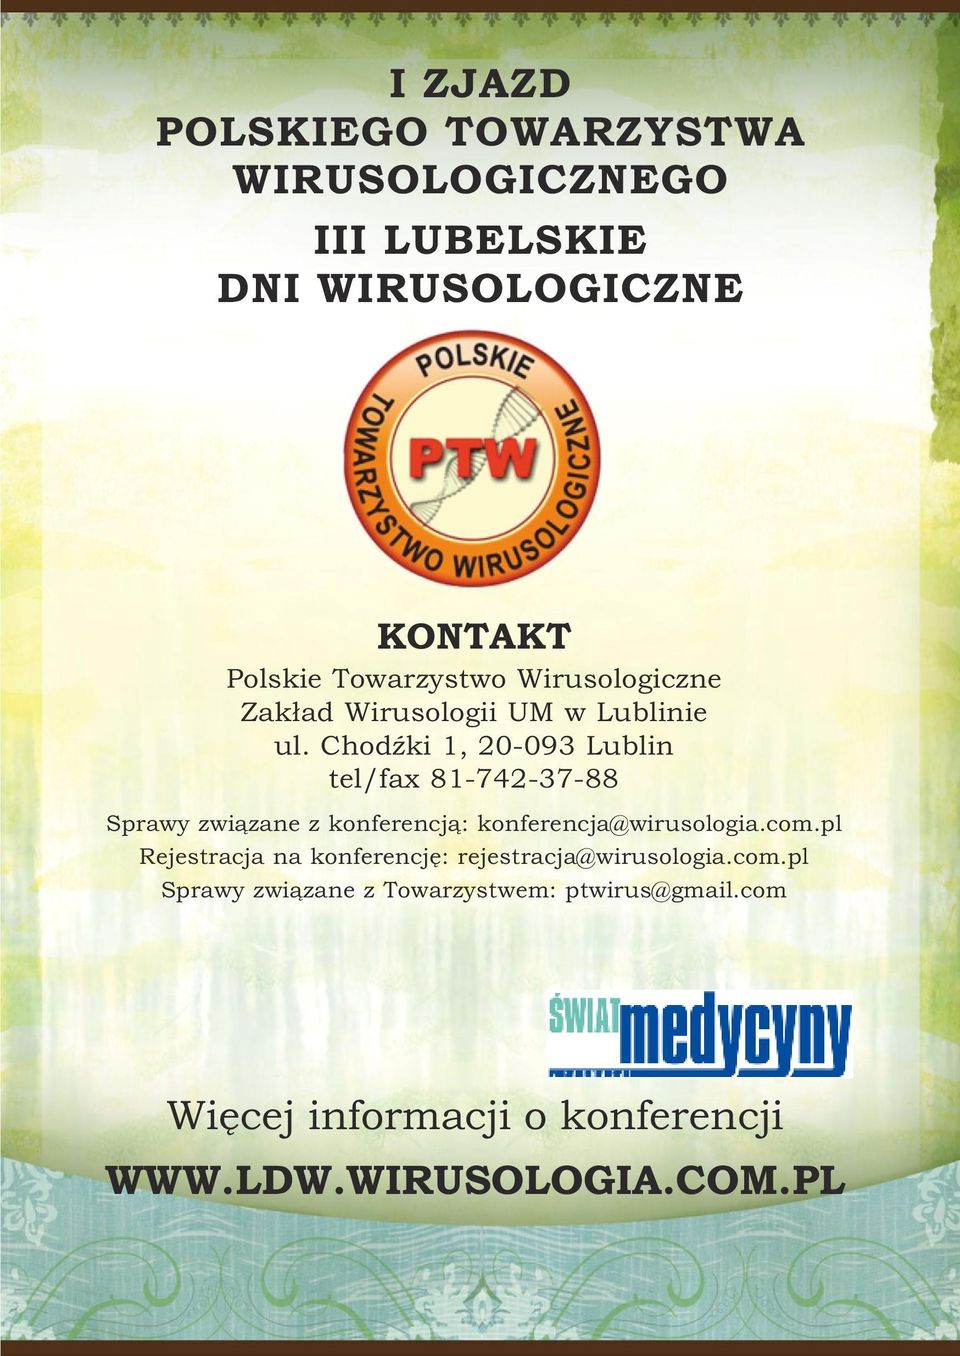 Chodźki 1, 20-093 Lublin tel/fax 81-742-37-88 Sprawy związane z konferencją: konferencja@wirusologia.com.